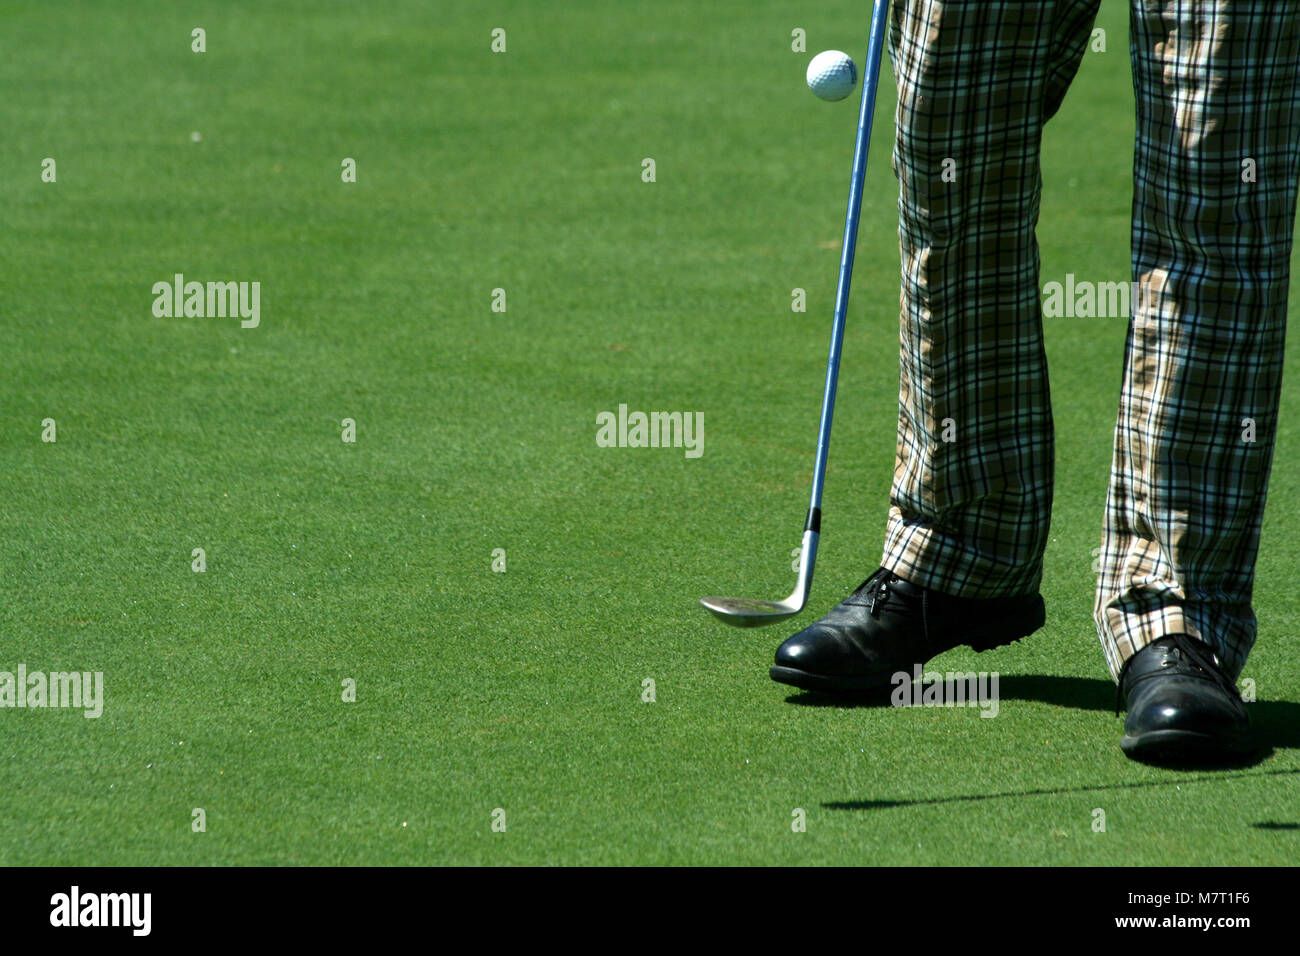 Un golfeur jongler avec une balle de golf avec pantalon rétro Photo Stock -  Alamy